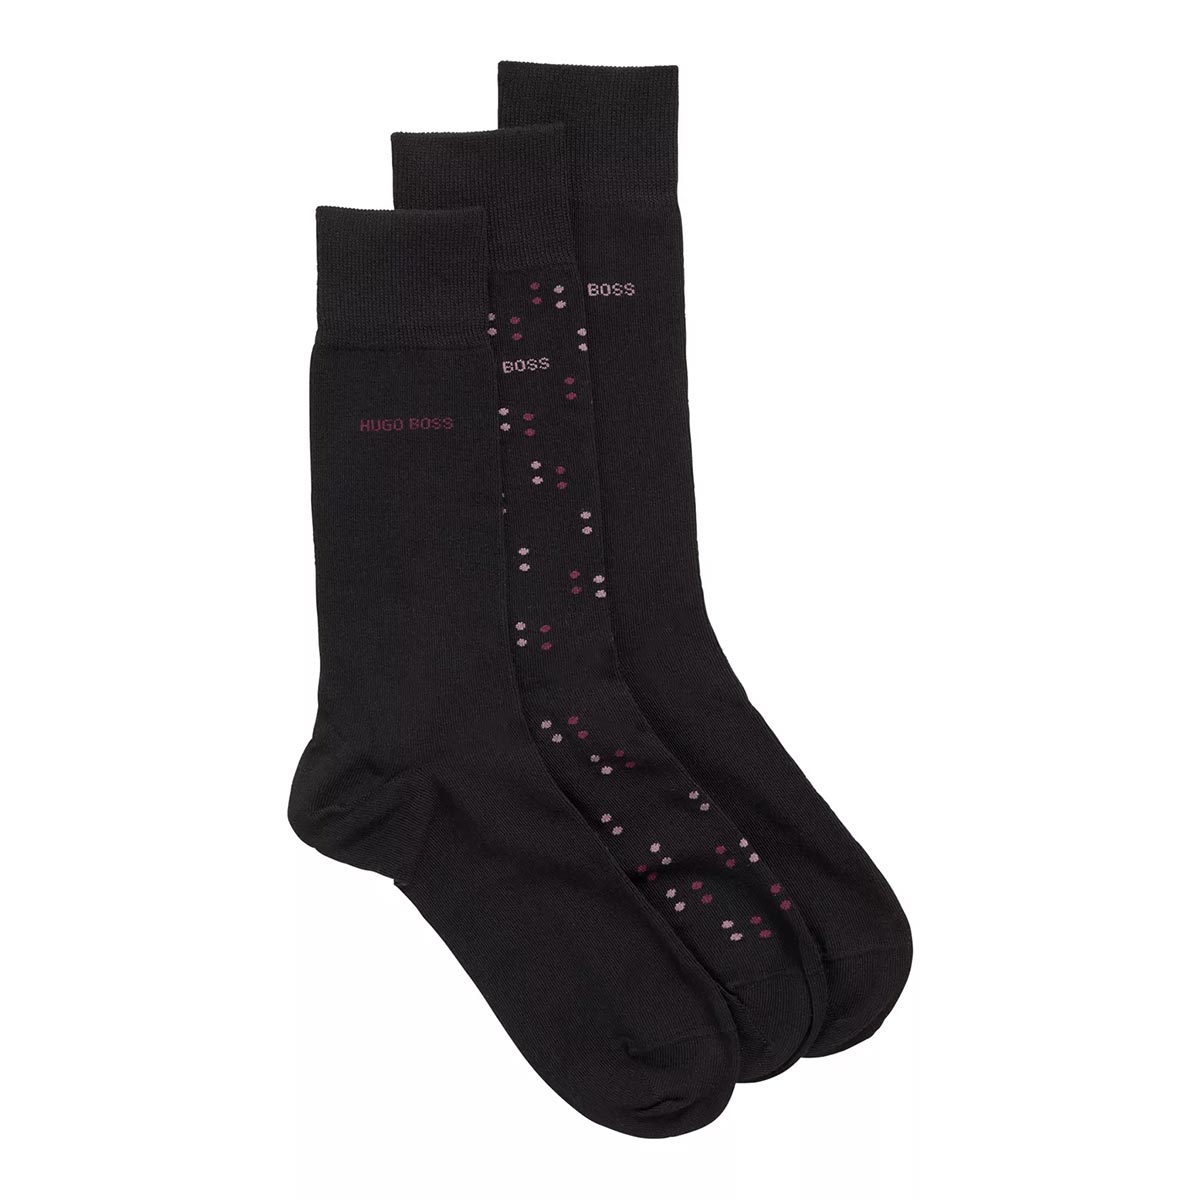 BOSS 3 Pack RS Sock Gift Set in Black